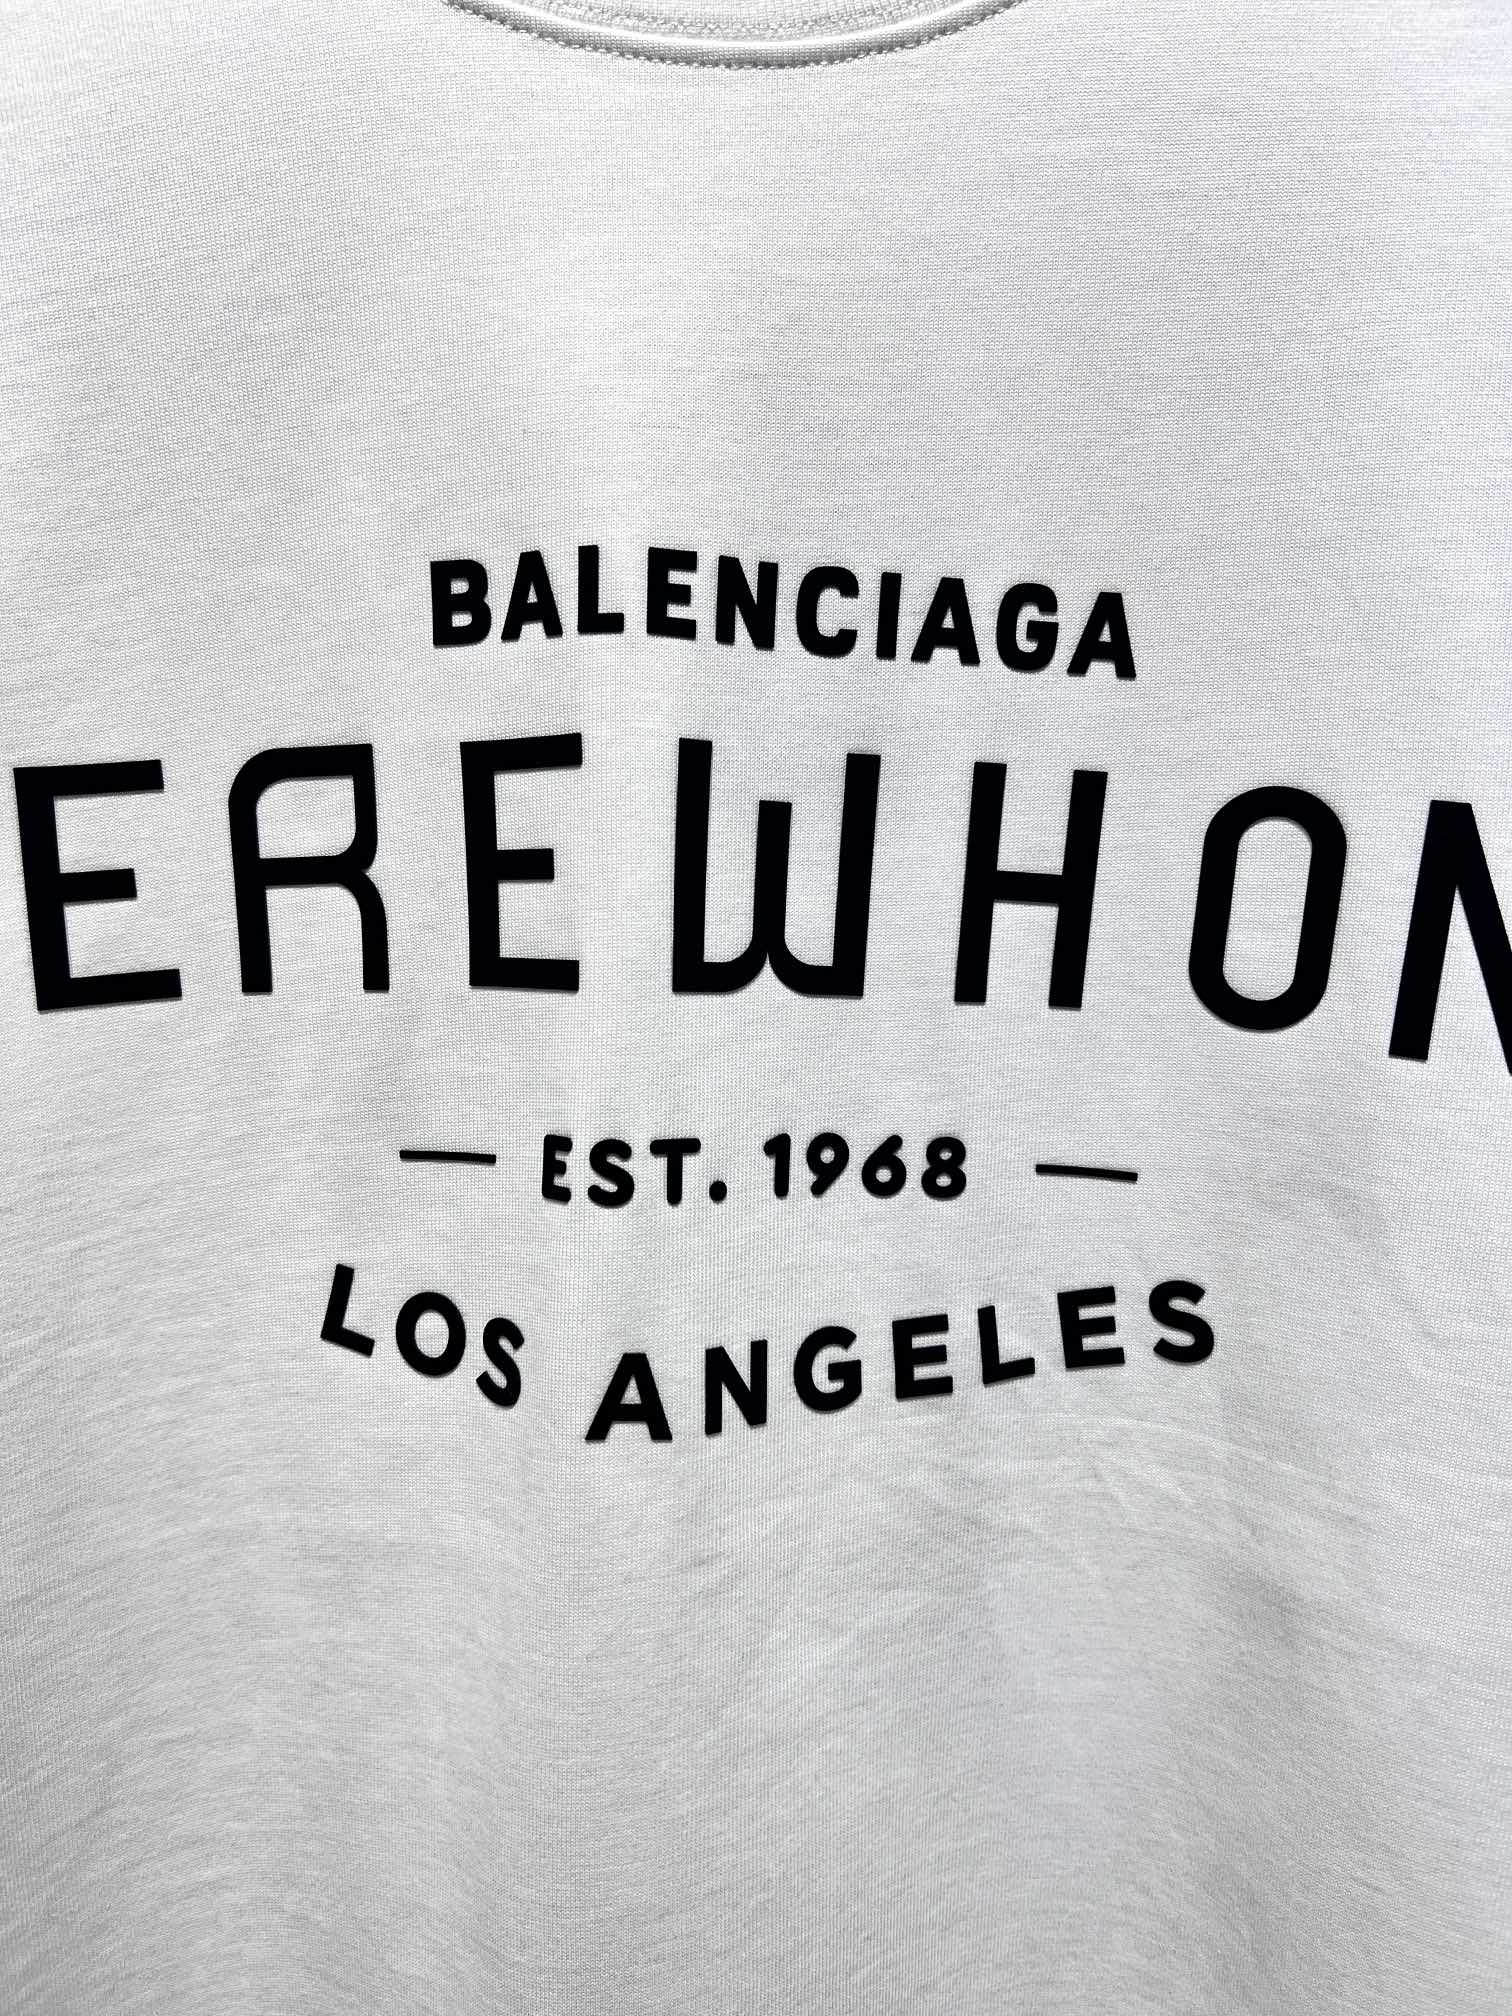 一番安い バレンシアガtシャツ 値段コピー 純綿 トップス 半袖 Balenciaga*EREWHONコラボ ファッション ホワイト_4